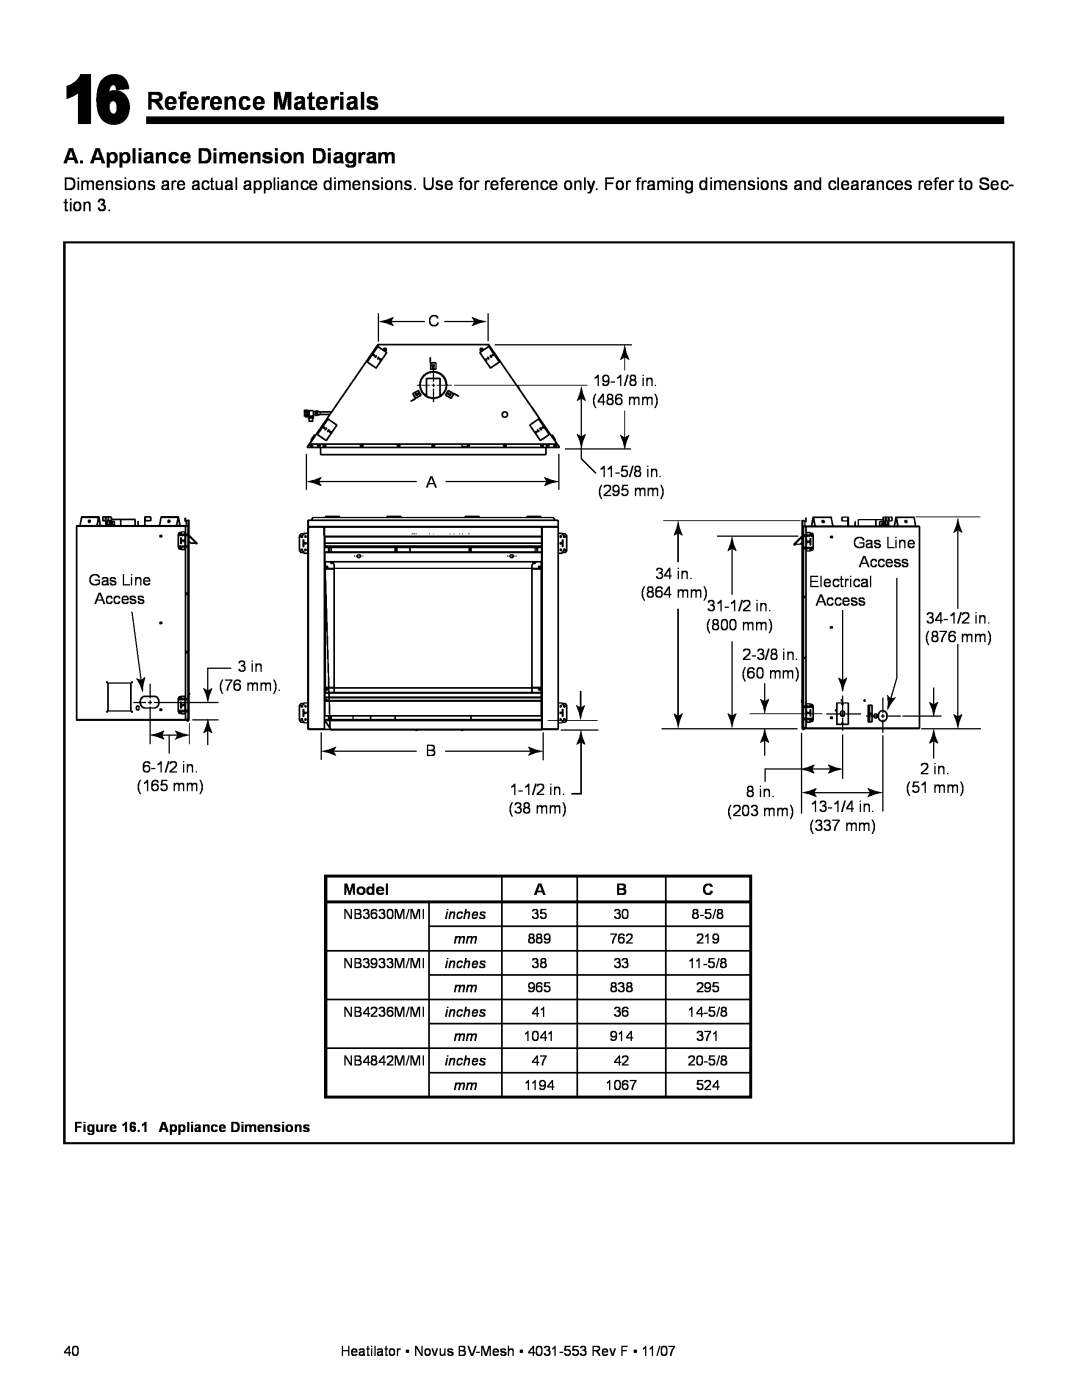 Heatiator NB4236MI, NB4842MI, NB3933MI, NB3630MI owner manual Reference Materials, A. Appliance Dimension Diagram, Model 